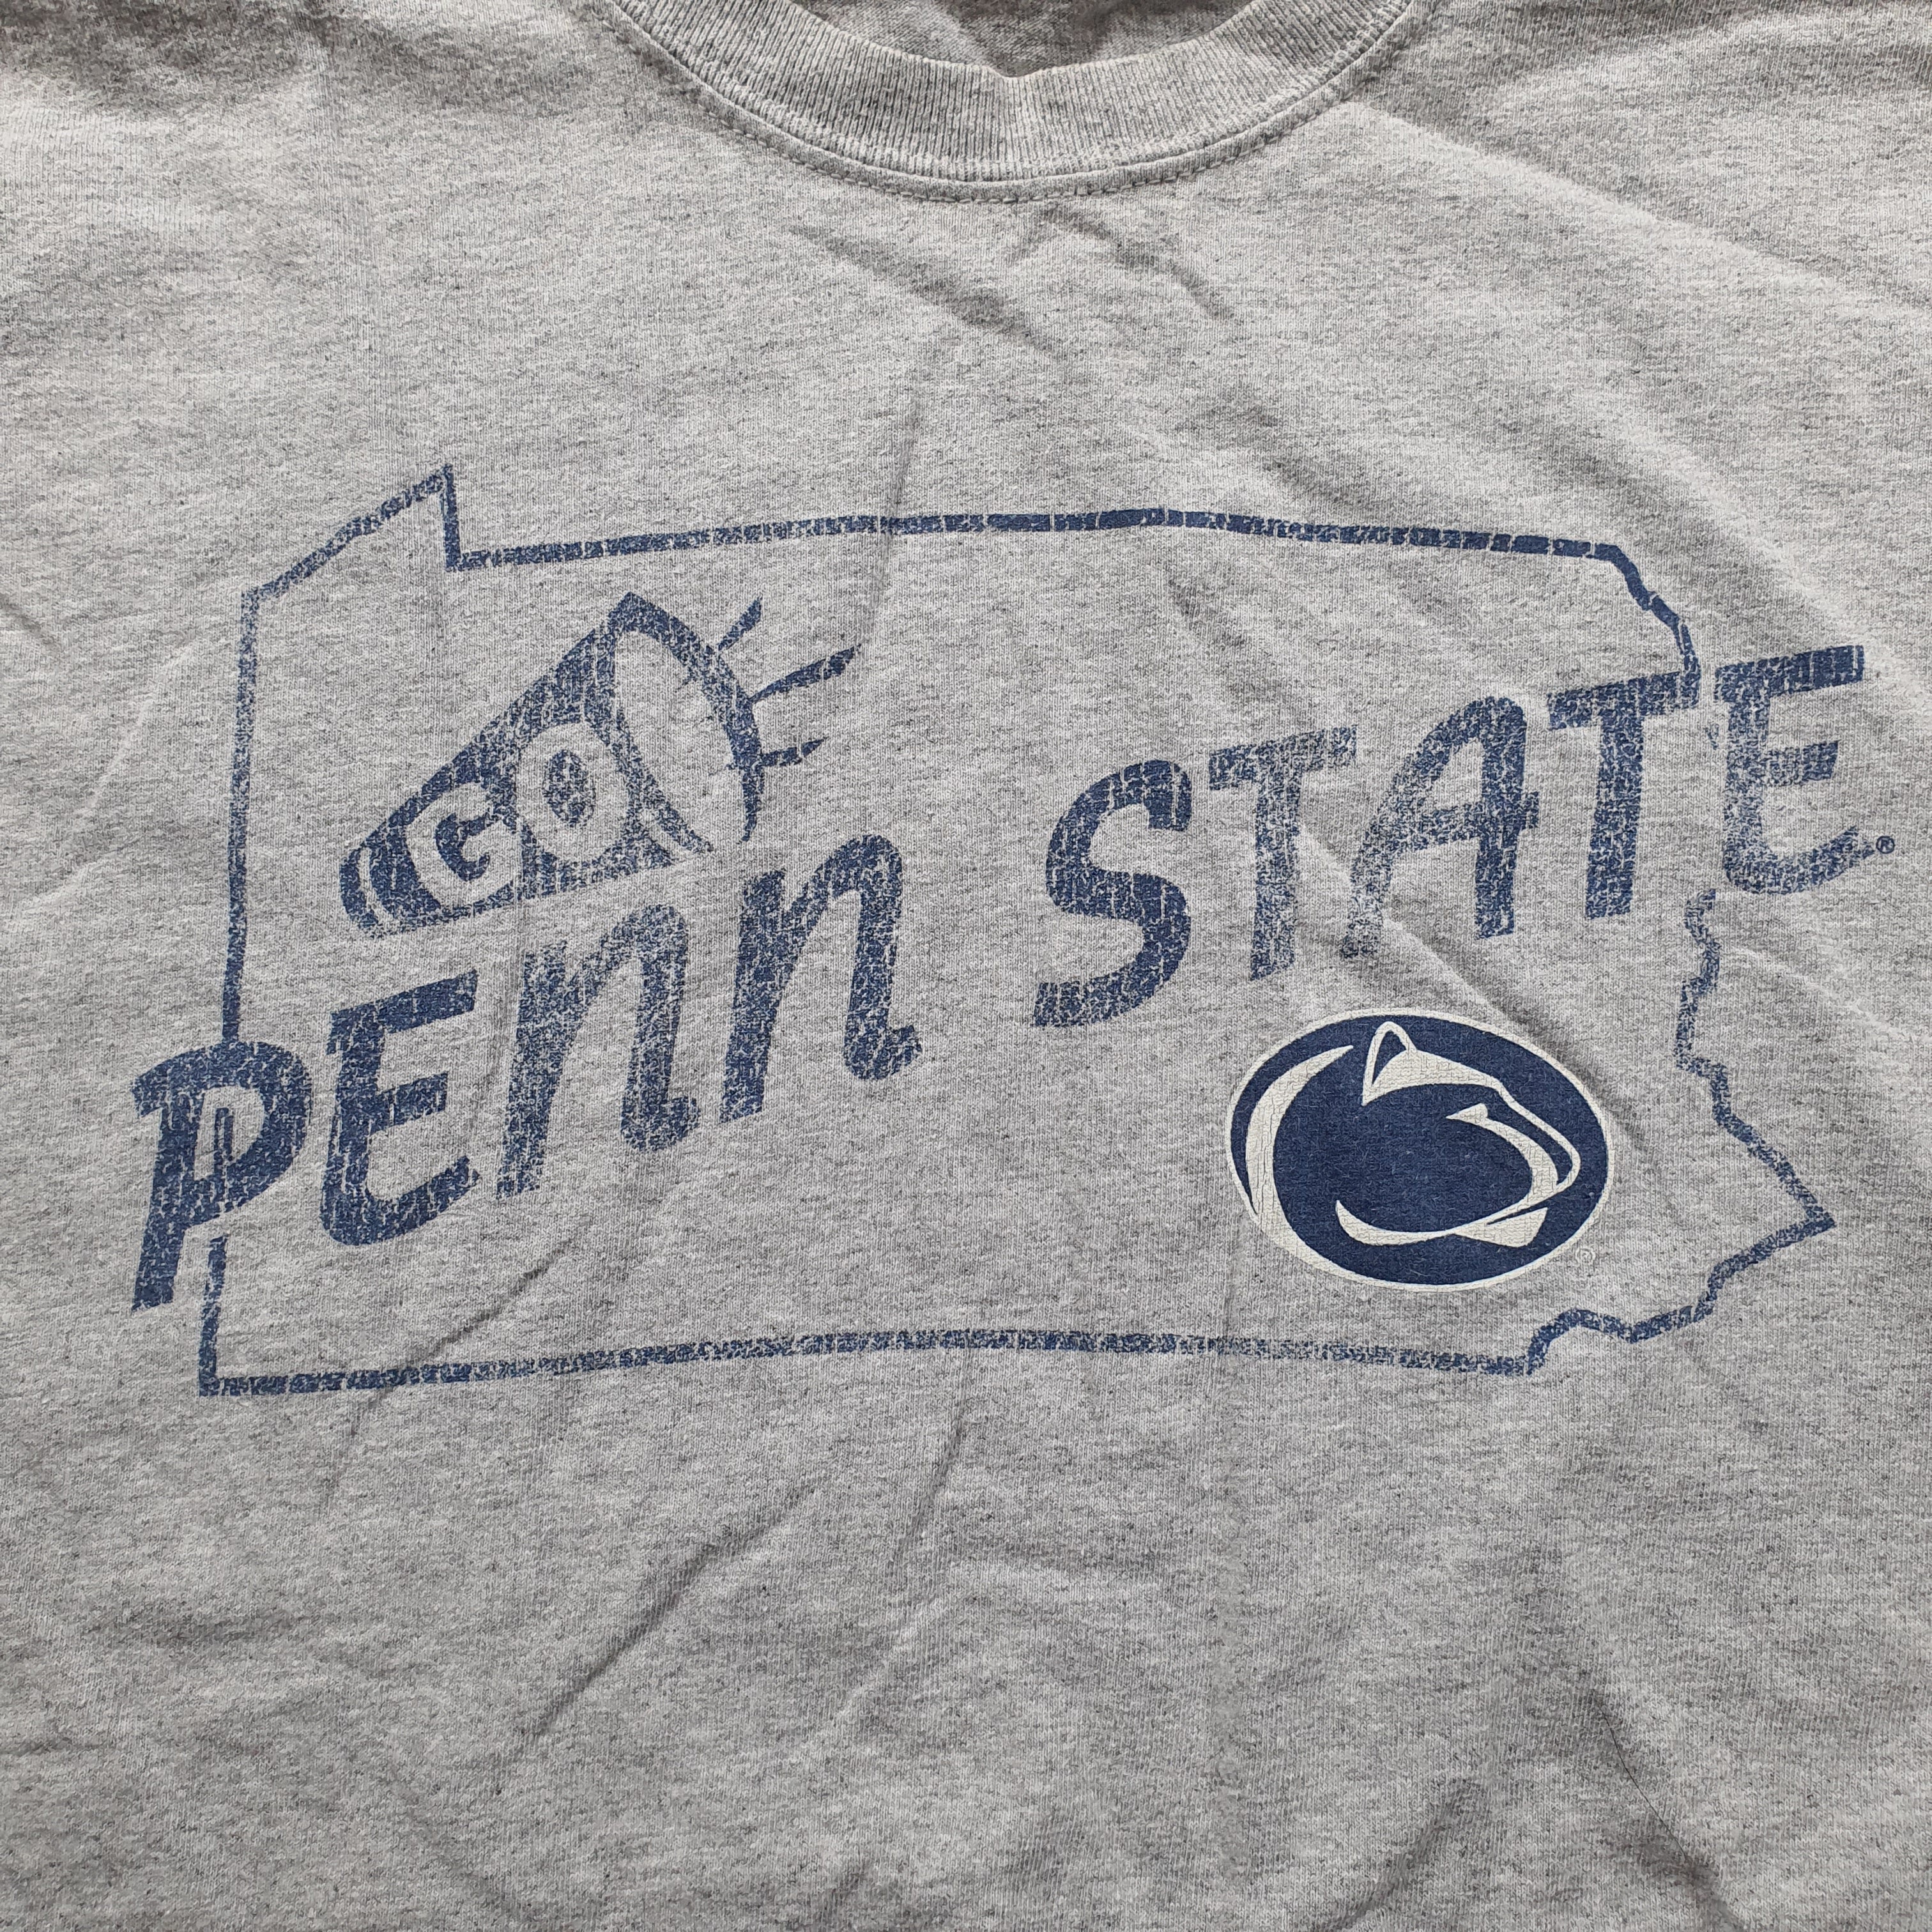 [XL] Gildan Penn State T-Shirt